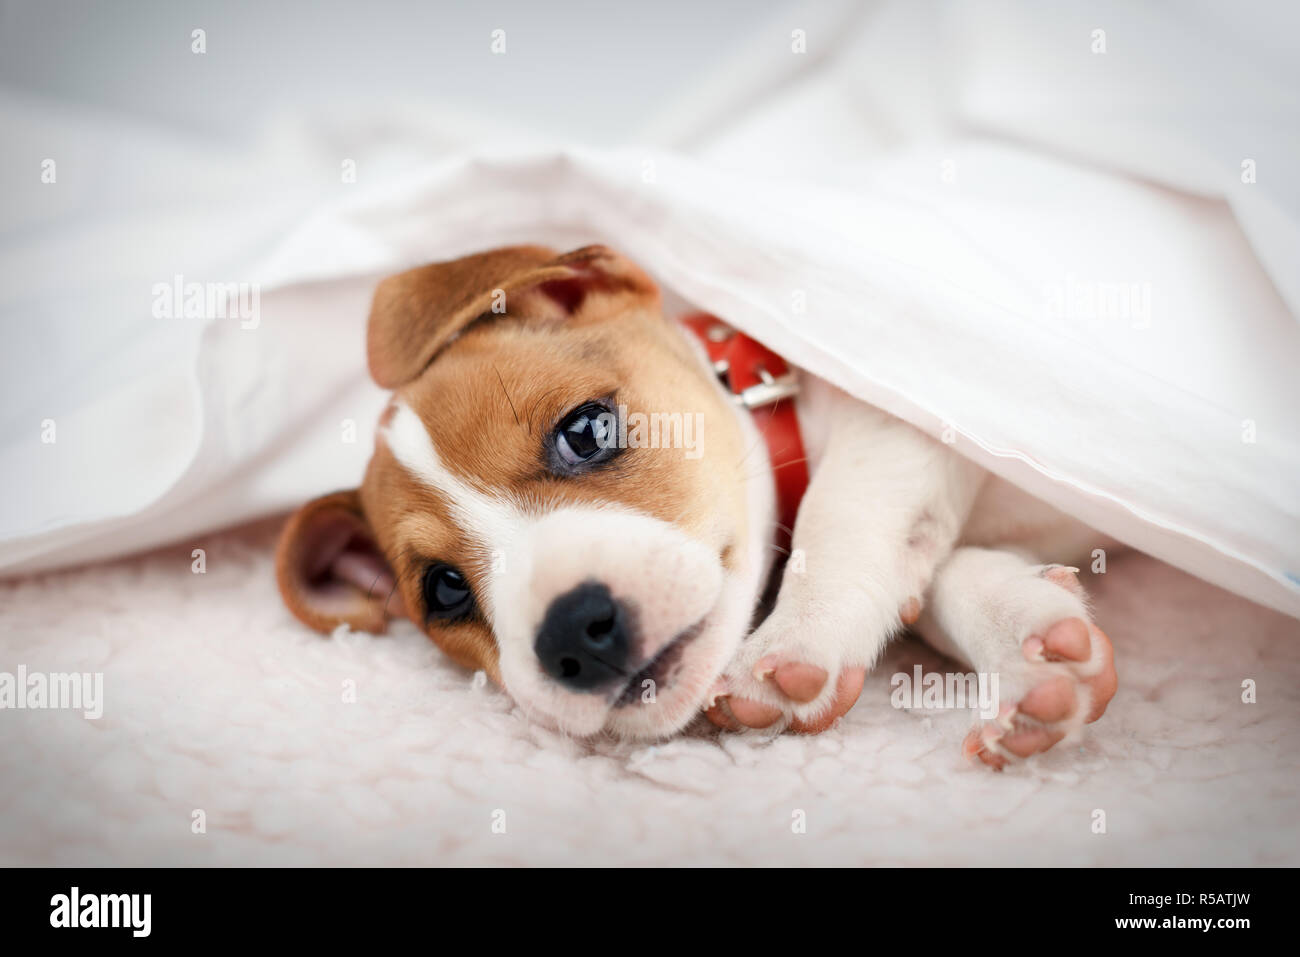 Jack Russell terrier cachorro durmiendo en la cama blanca. Fotografía de animales Foto de stock